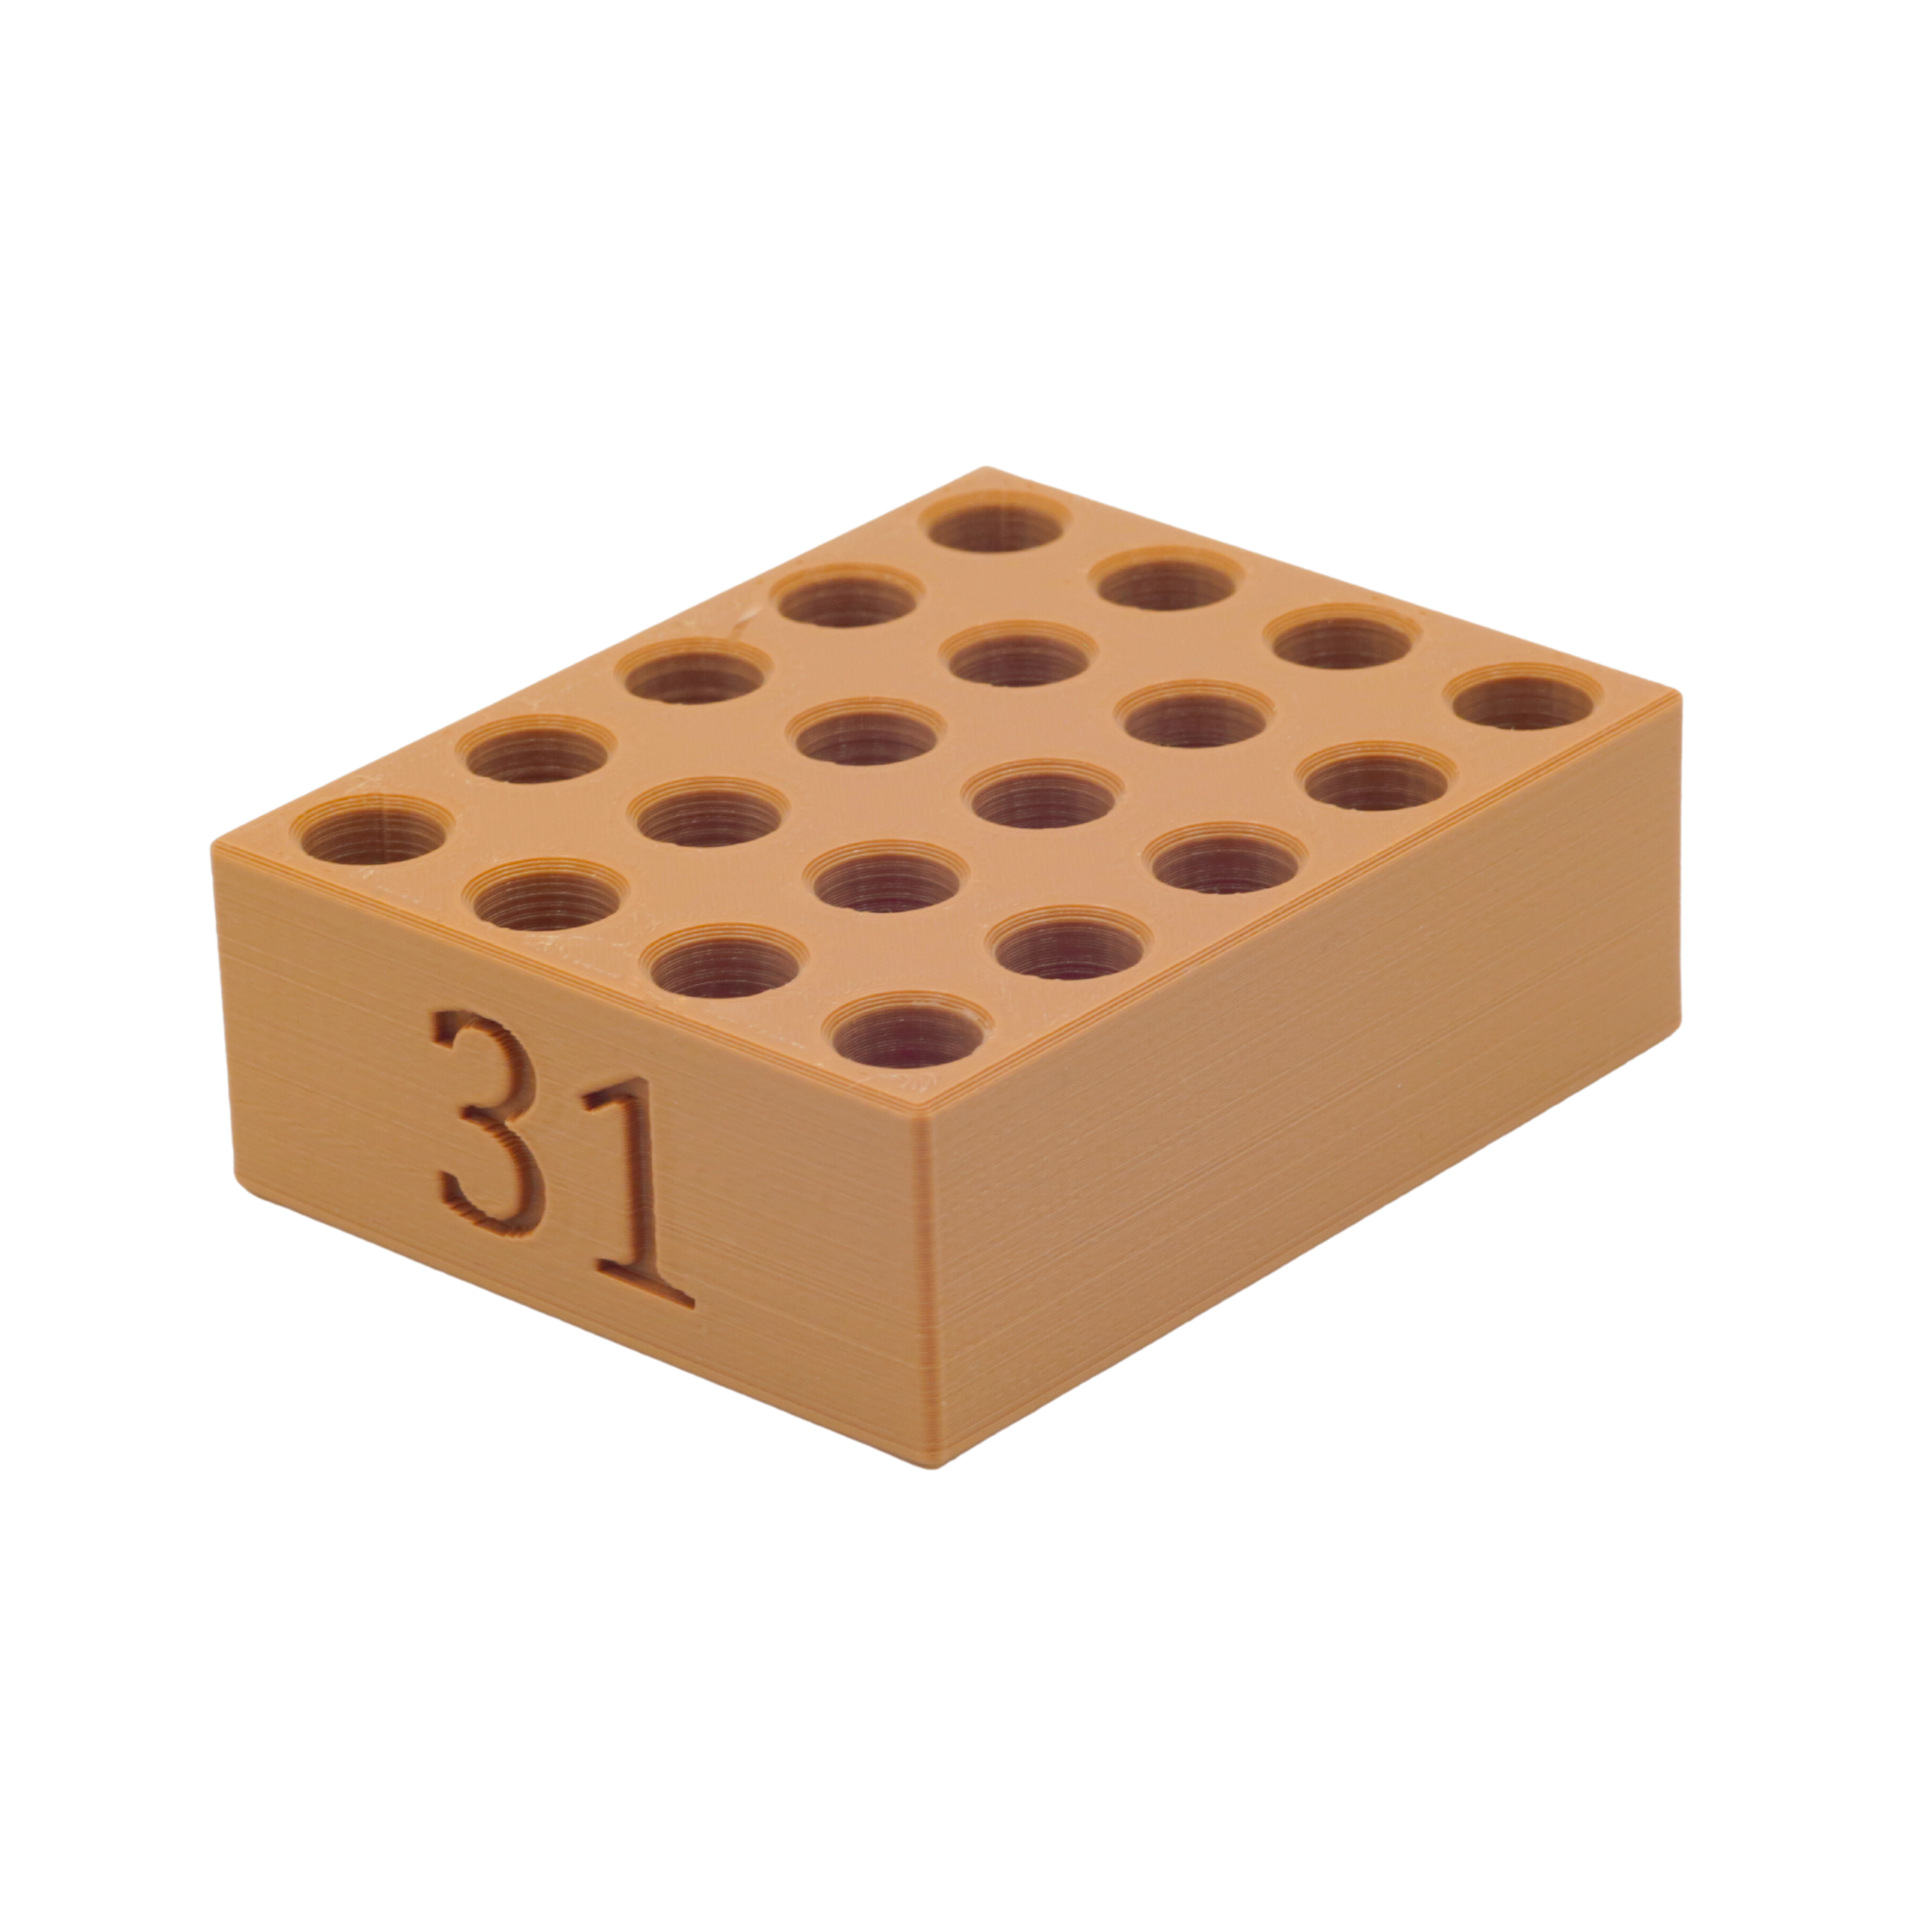 31 cal. Paper Cartridge Loading Block